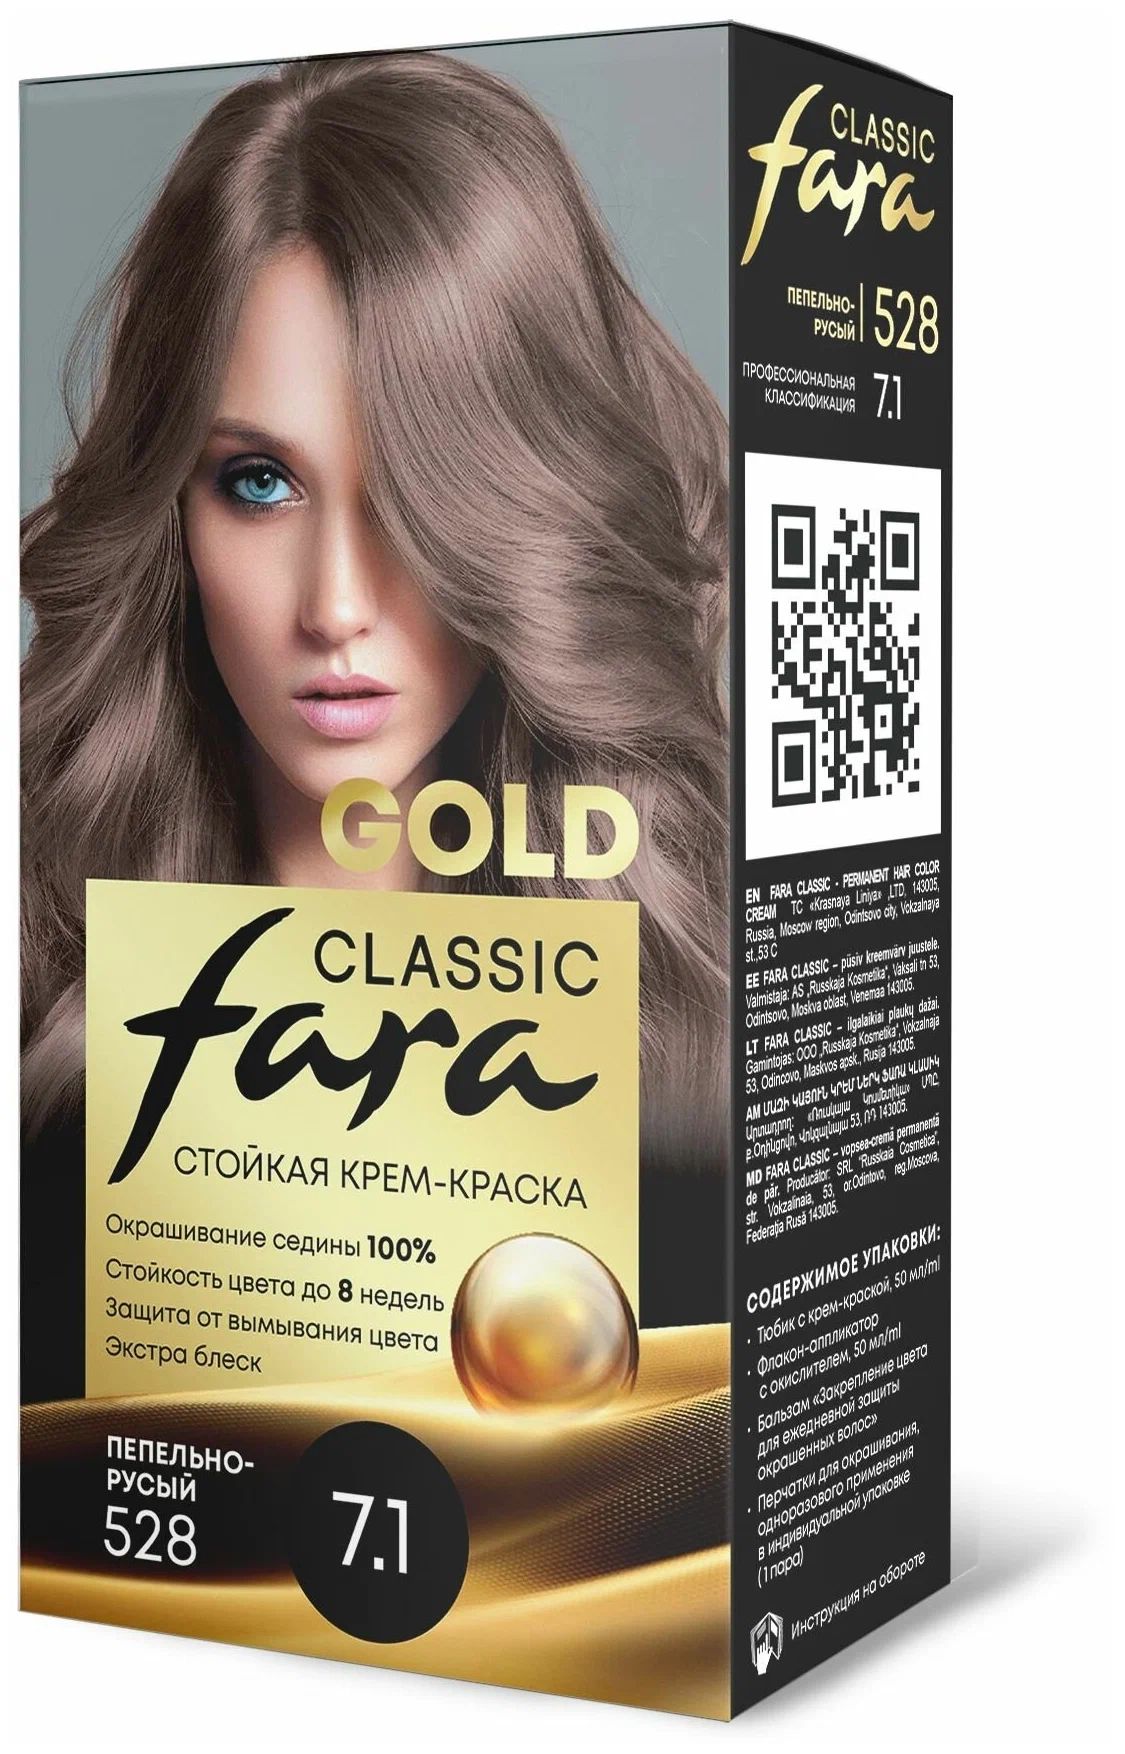 Крем-краска для волос Fara Classic Gold 528 пепельно-русый 7.1, 140 г spa ceylon средство для умывания мужская коллекция ладан 100